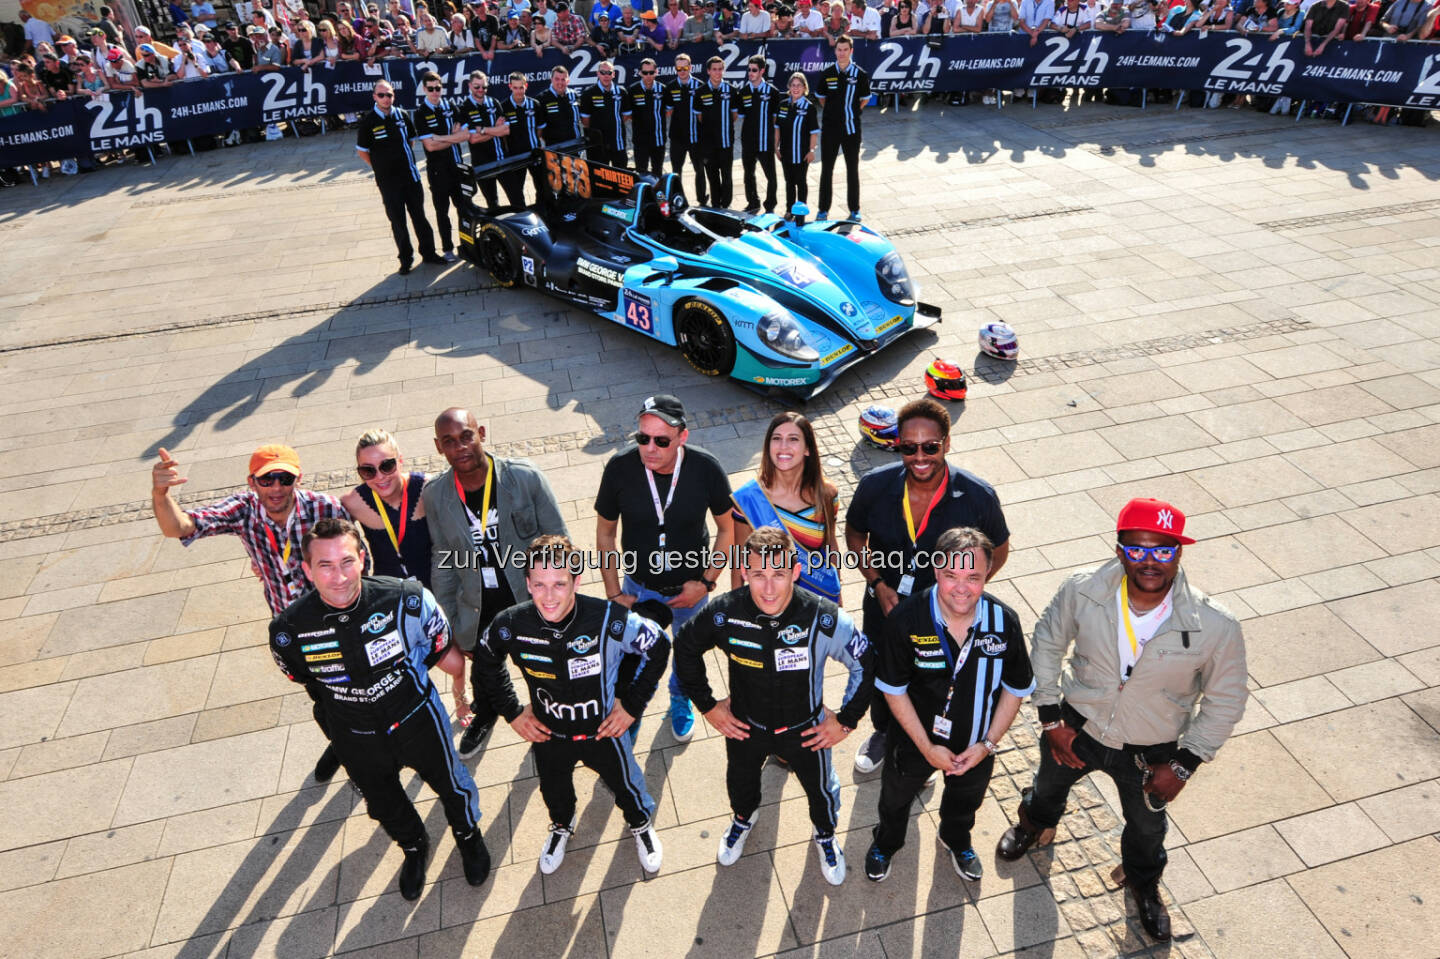 Team New Blood - Le Mans 2014 - Puls 4 sucht gemeinsam mit Christian Klien das größte Rennfahrer-Talent (Bild: Puls4)